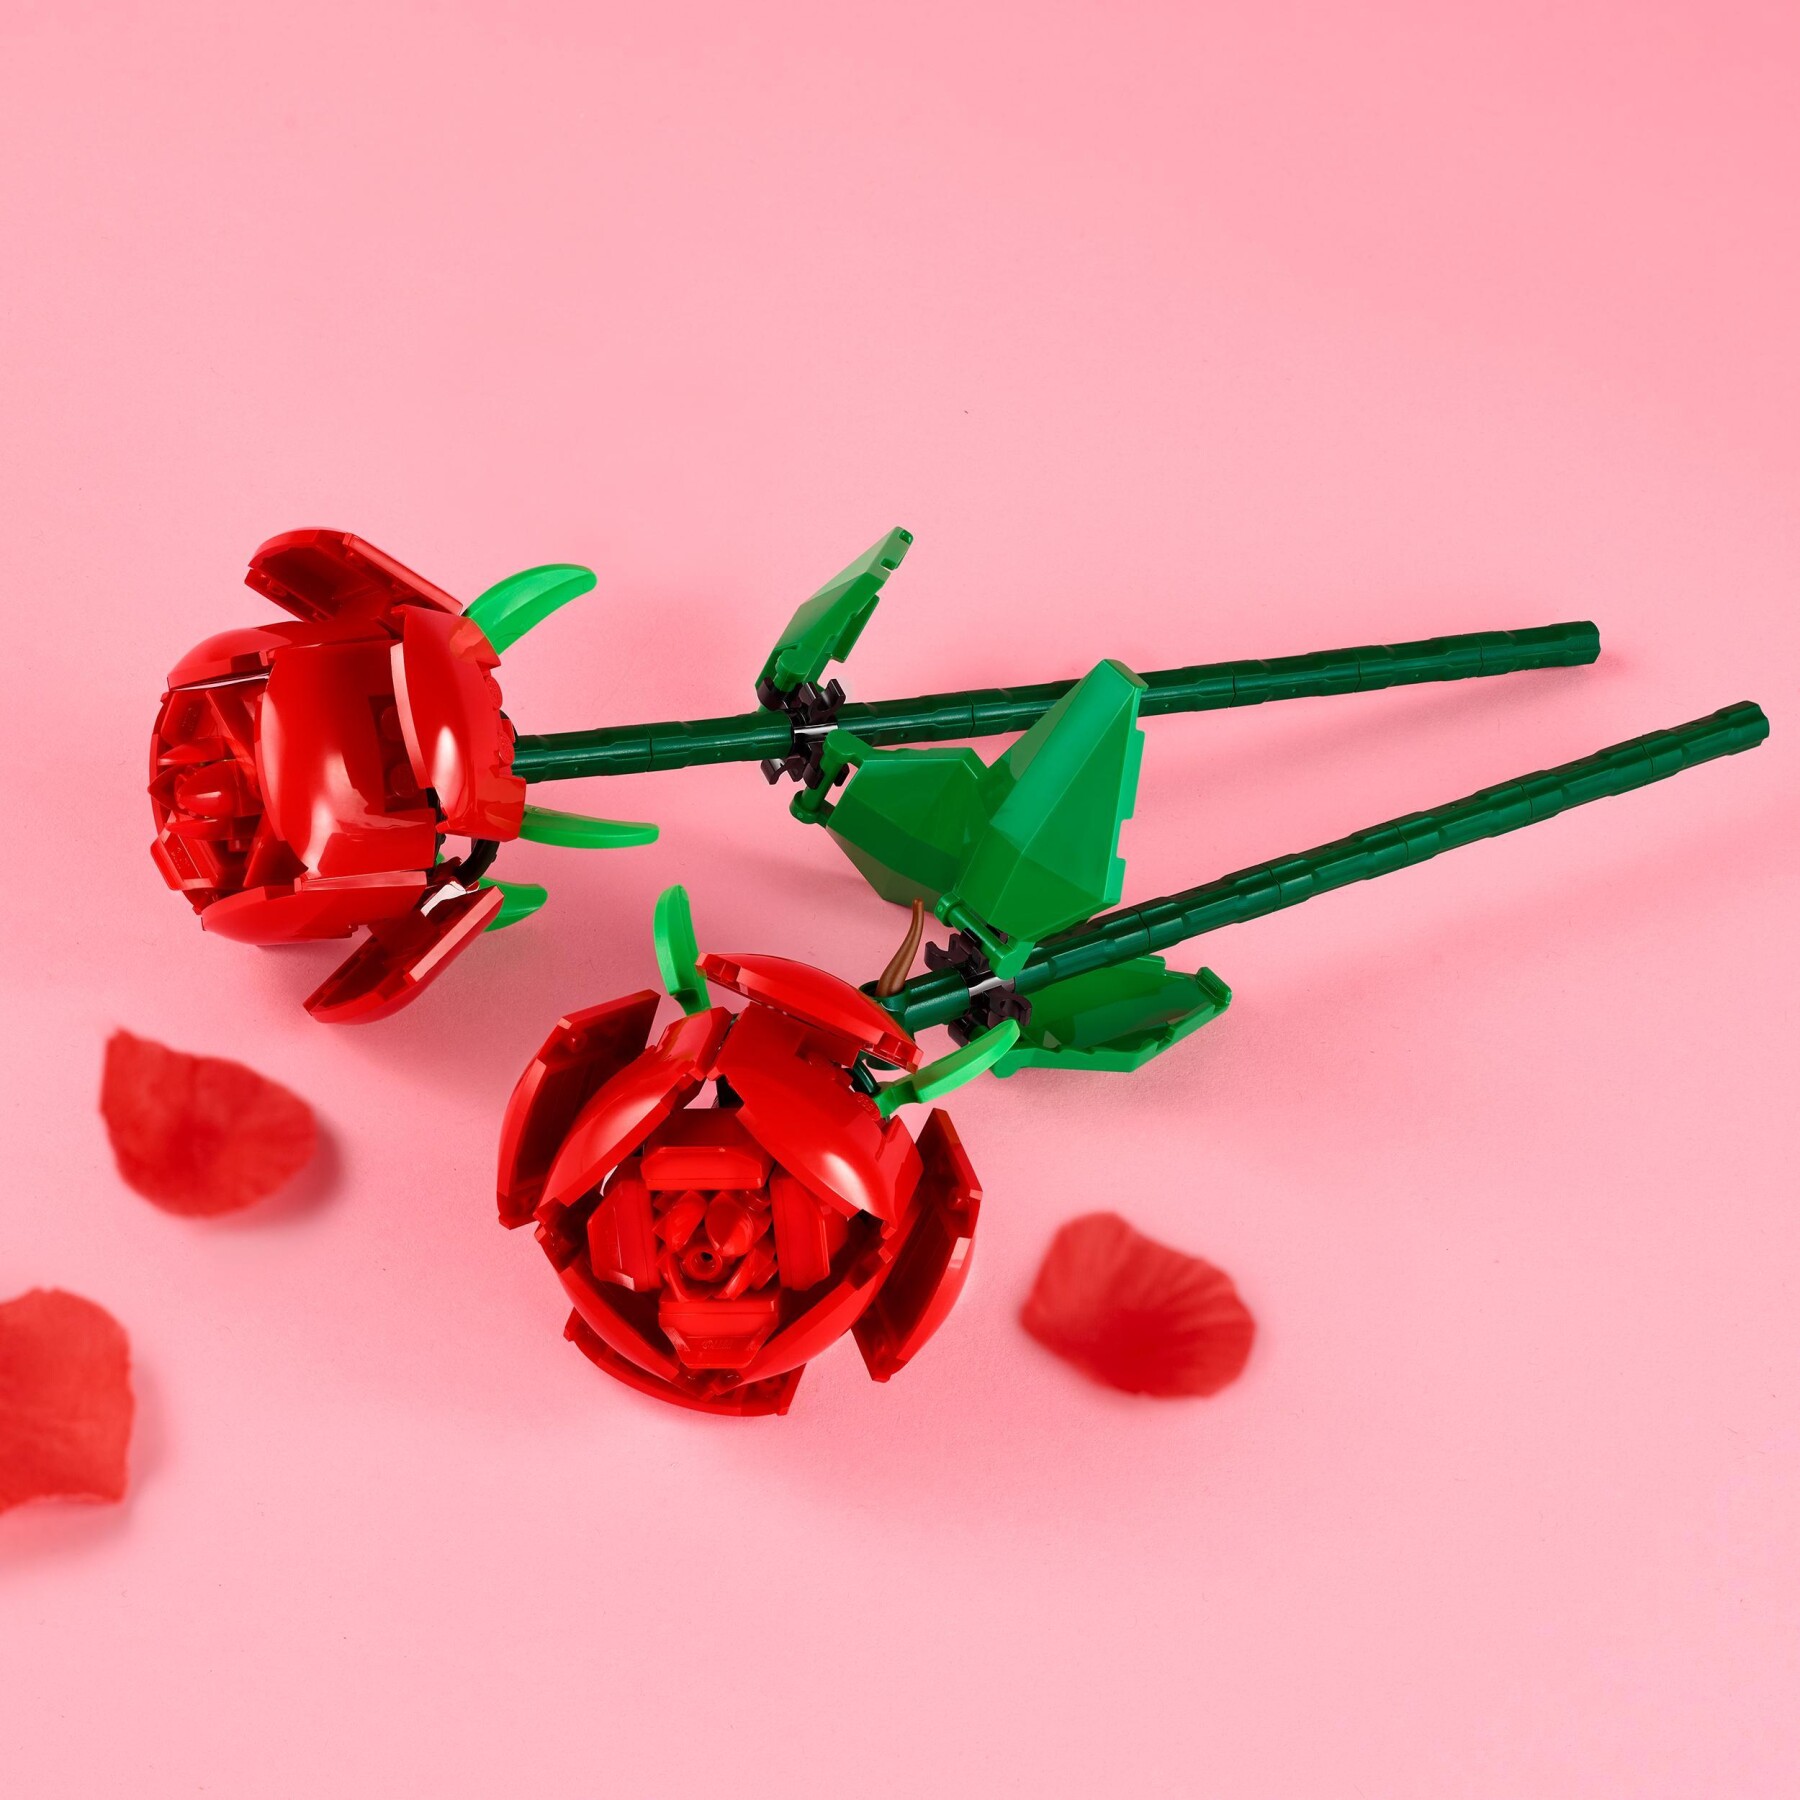 Lego creator 40460 rose set fiori finti compatibile con bouquet di fiori artificiali, regalo di san valentino per lei o lui - LEGO CREATOR